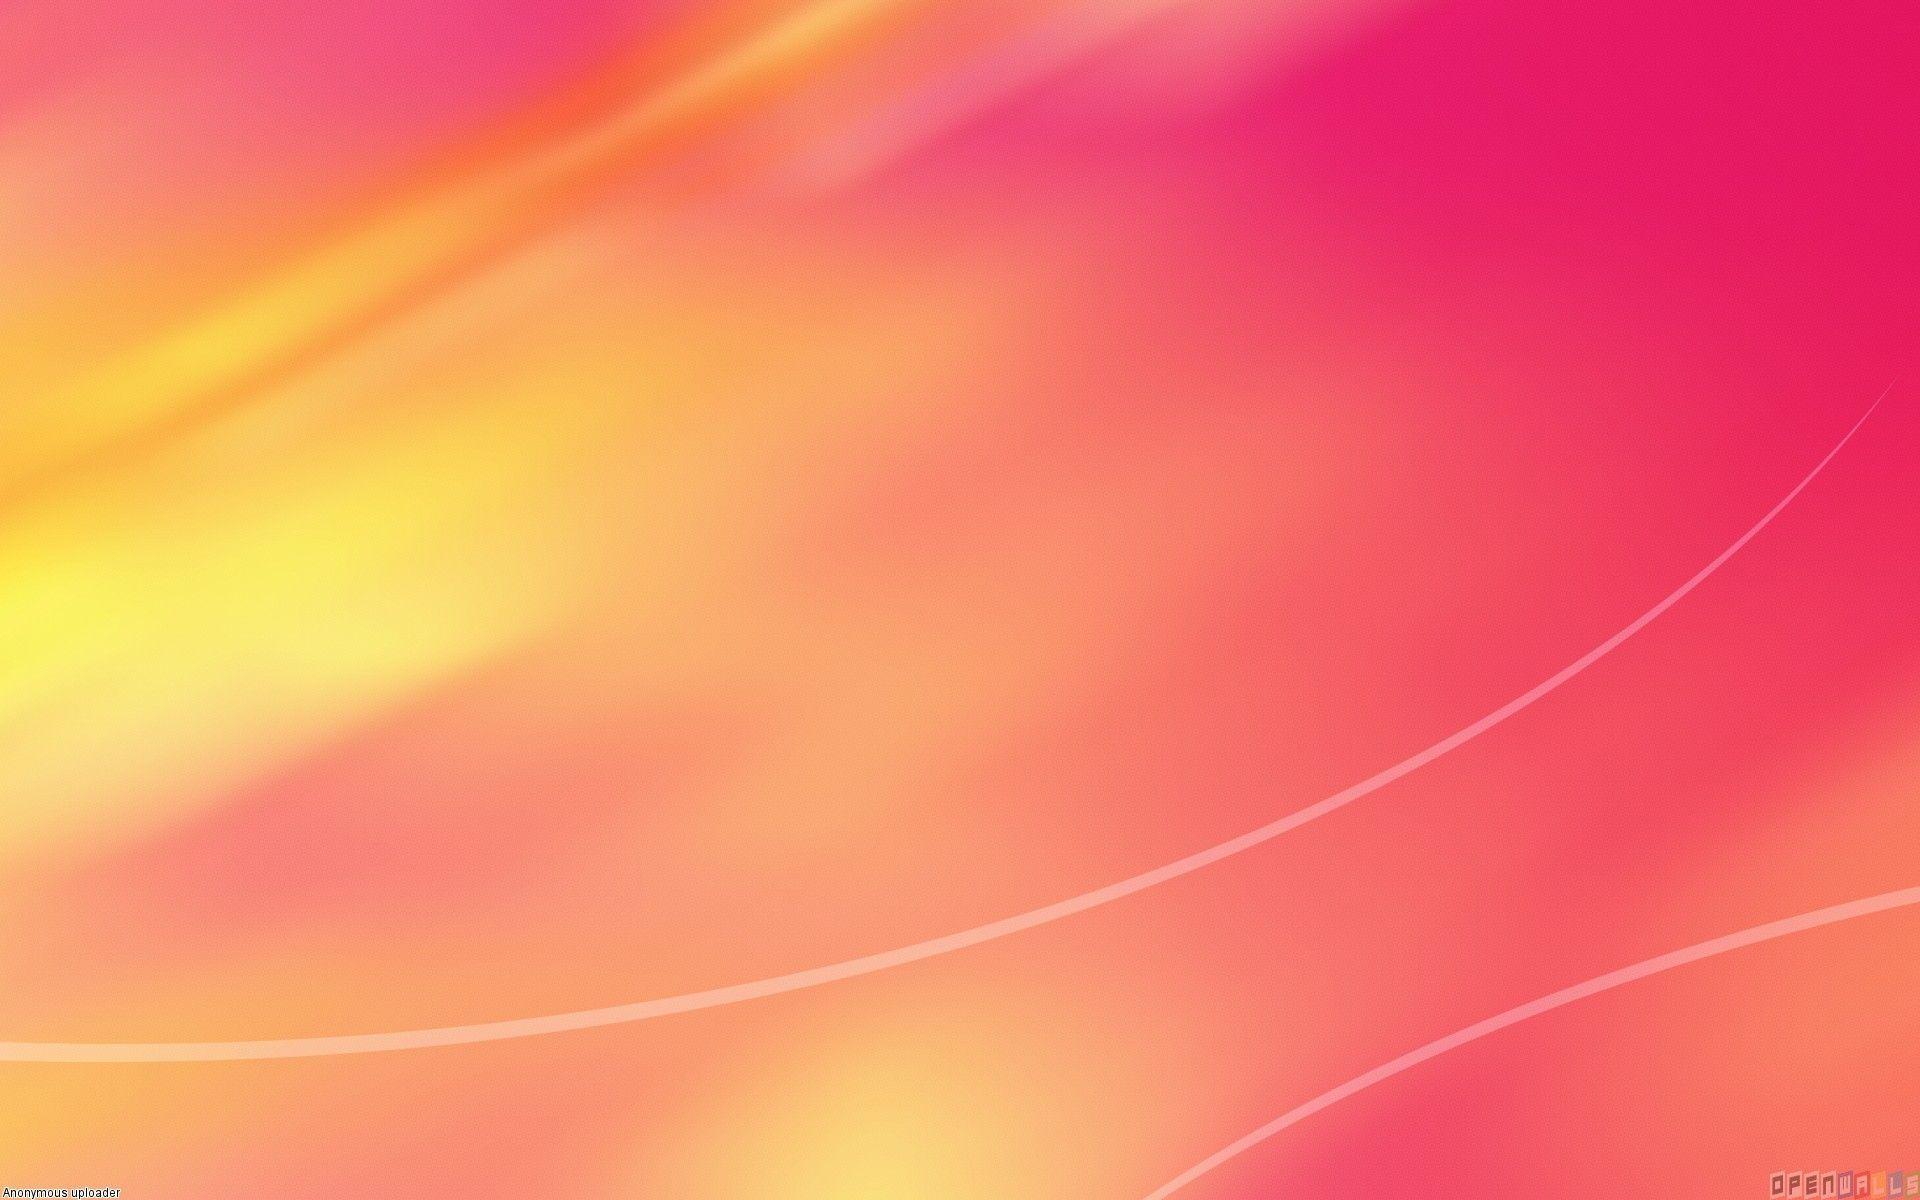 Nền màu hồng cam miễn phí: Tải xuống ngay bức ảnh với nền màu hồng cam miễn phí để trang trí cho thiết bị của bạn. Màu sắc nổi bật này sẽ tạo nên sự rực rỡ và độc đáo cho mọi sản phẩm của bạn.